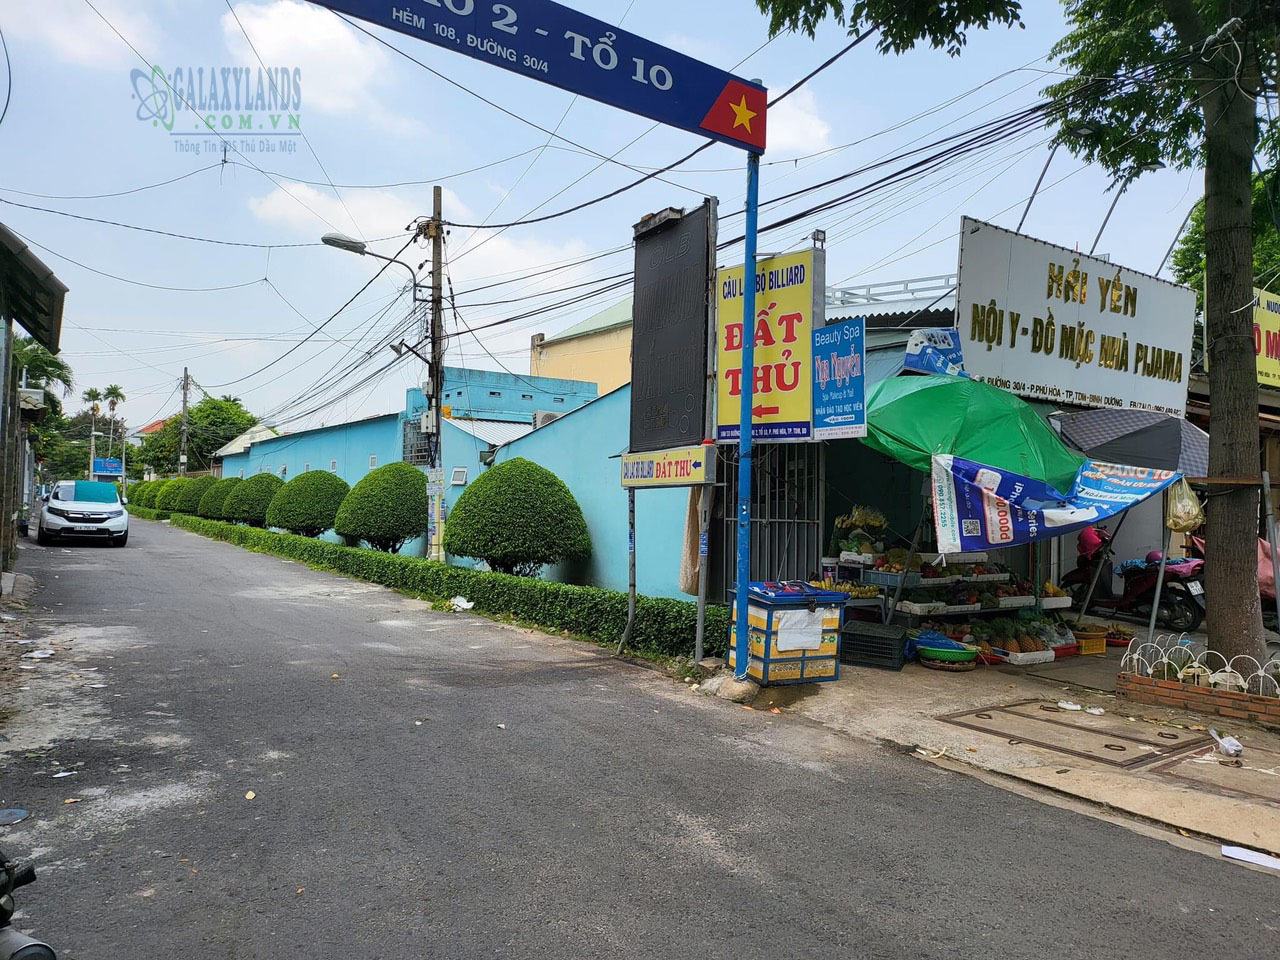 Bán đất mặt tiền đường 30/4 Phú Hòa gần ngã ba Nam Sanh